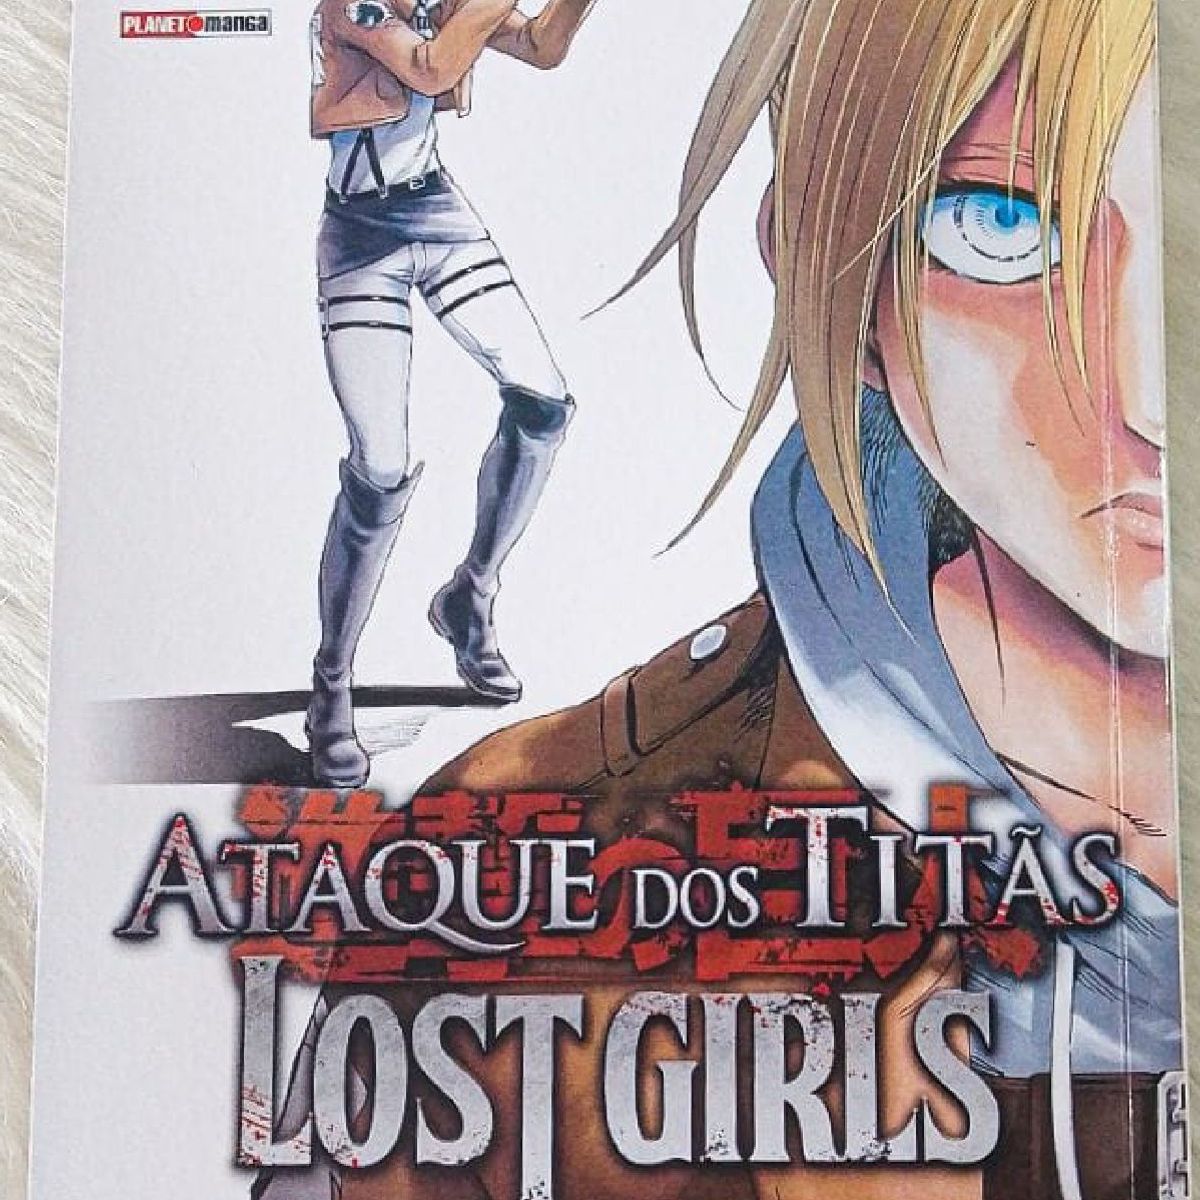 Ataque dos Titãs: Lost Girls #1 – COMIC BOOM!